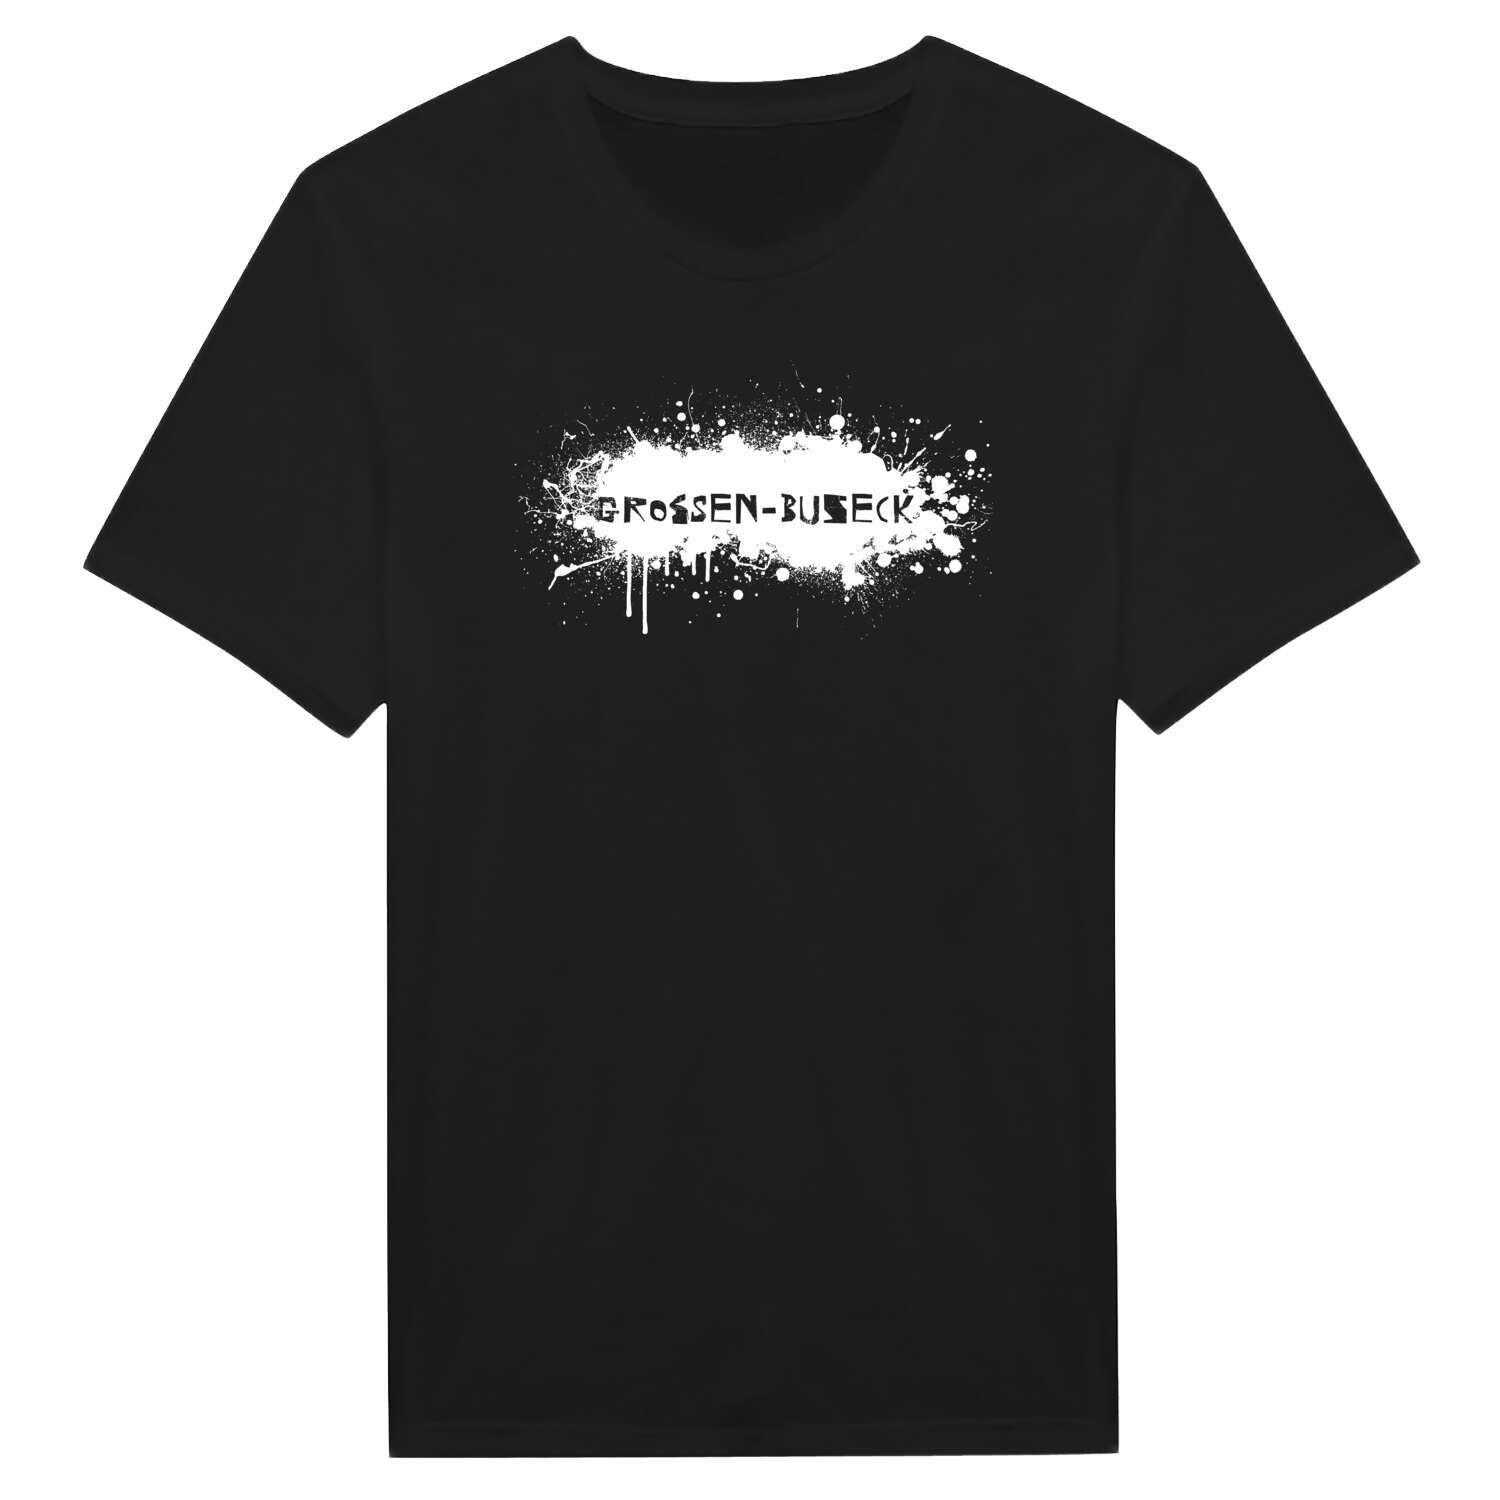 Großen-Buseck T-Shirt »Paint Splash Punk«